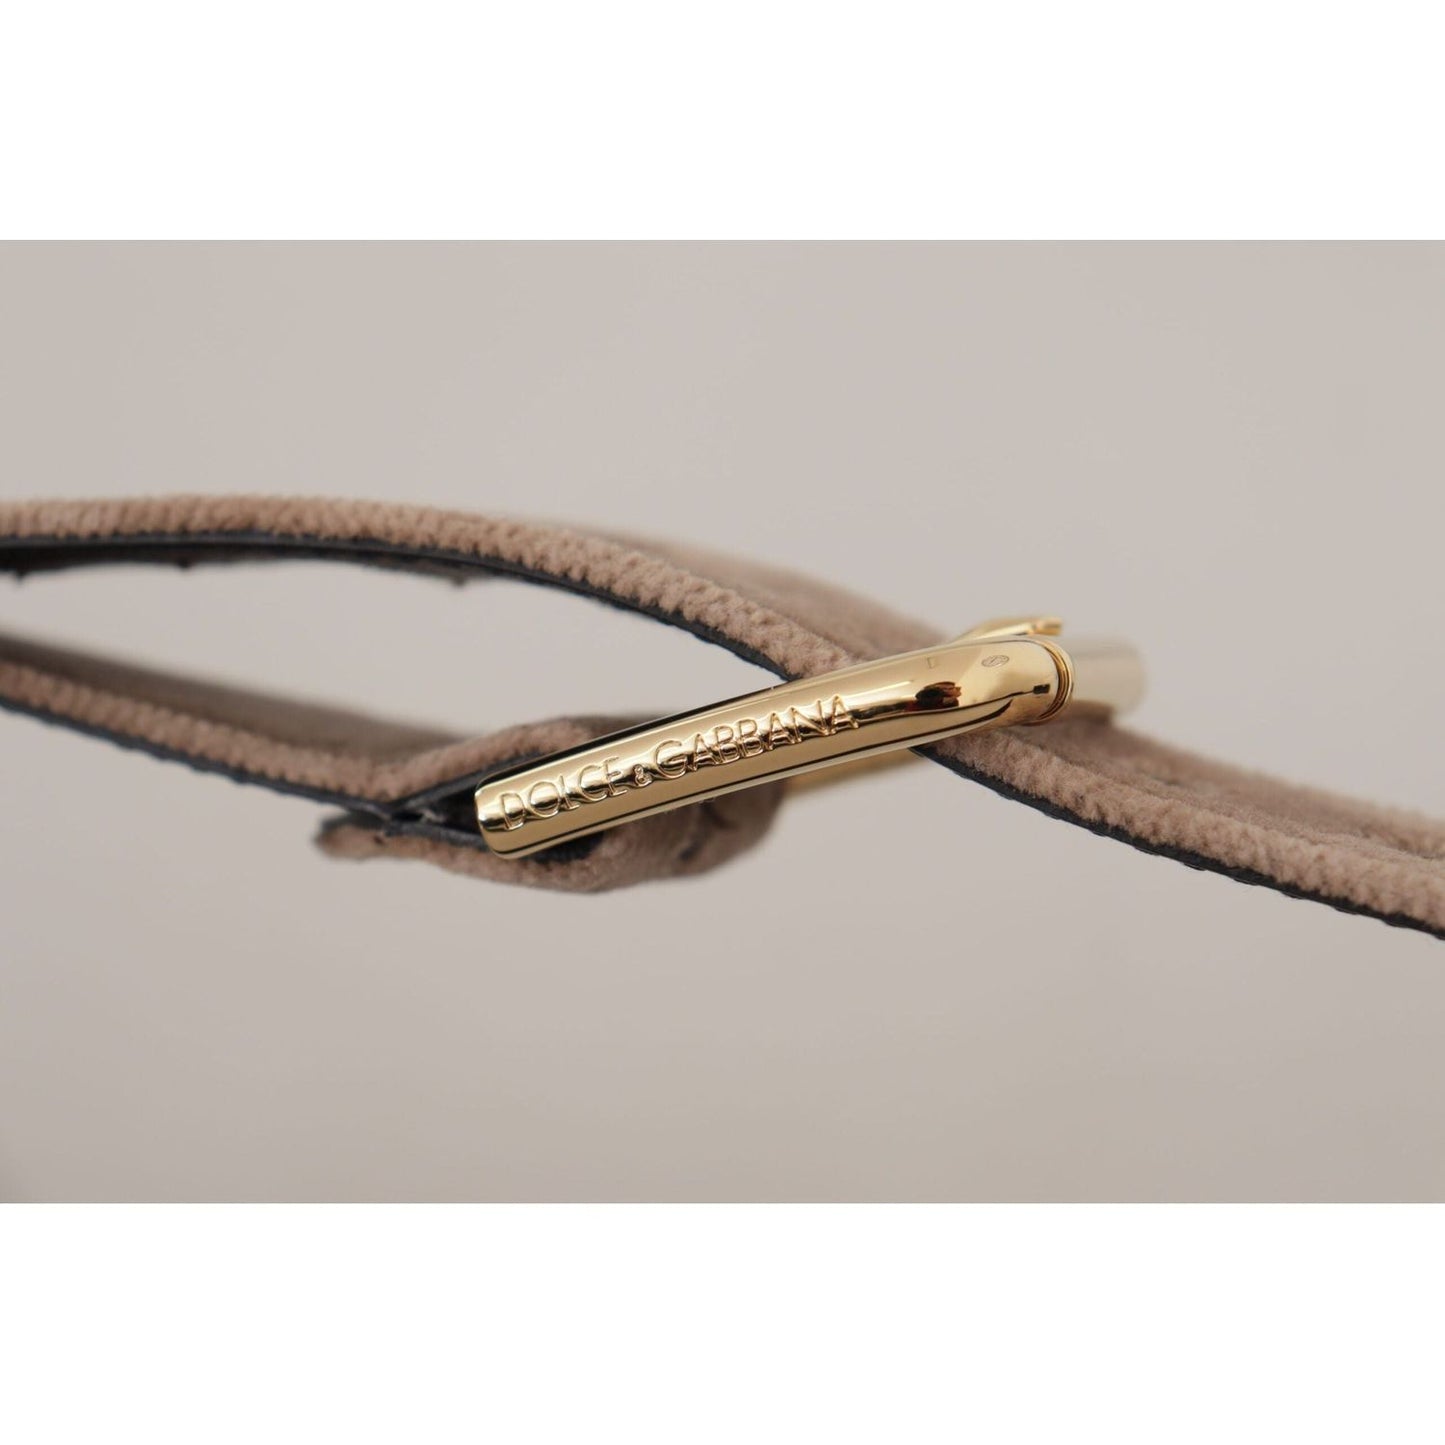 Dolce & Gabbana Elegant Velvet Logo Buckle Belt light-brown-velvet-gold-tone-logo-metal-buckle-belt IMG_8944-scaled-d072c2d3-4a7.jpg